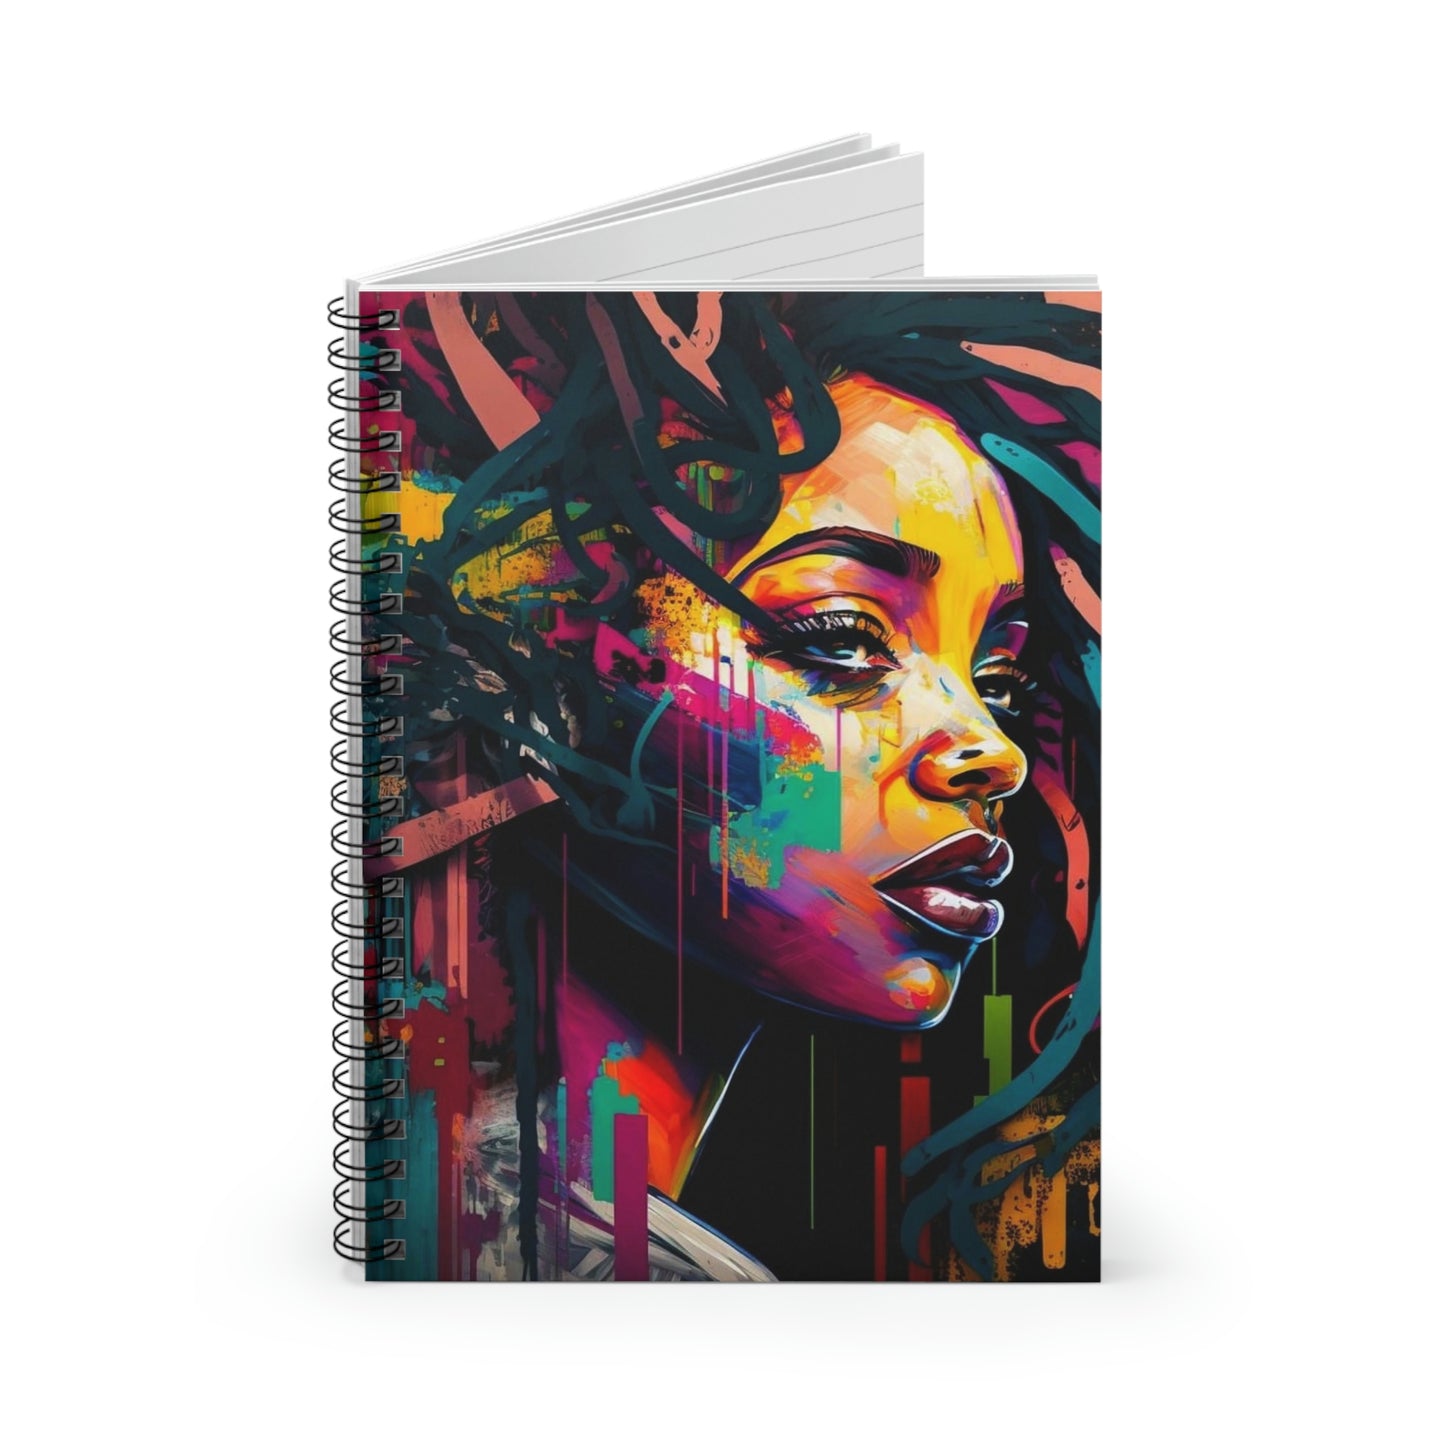 Graffiti Spiral Notebook/Journal